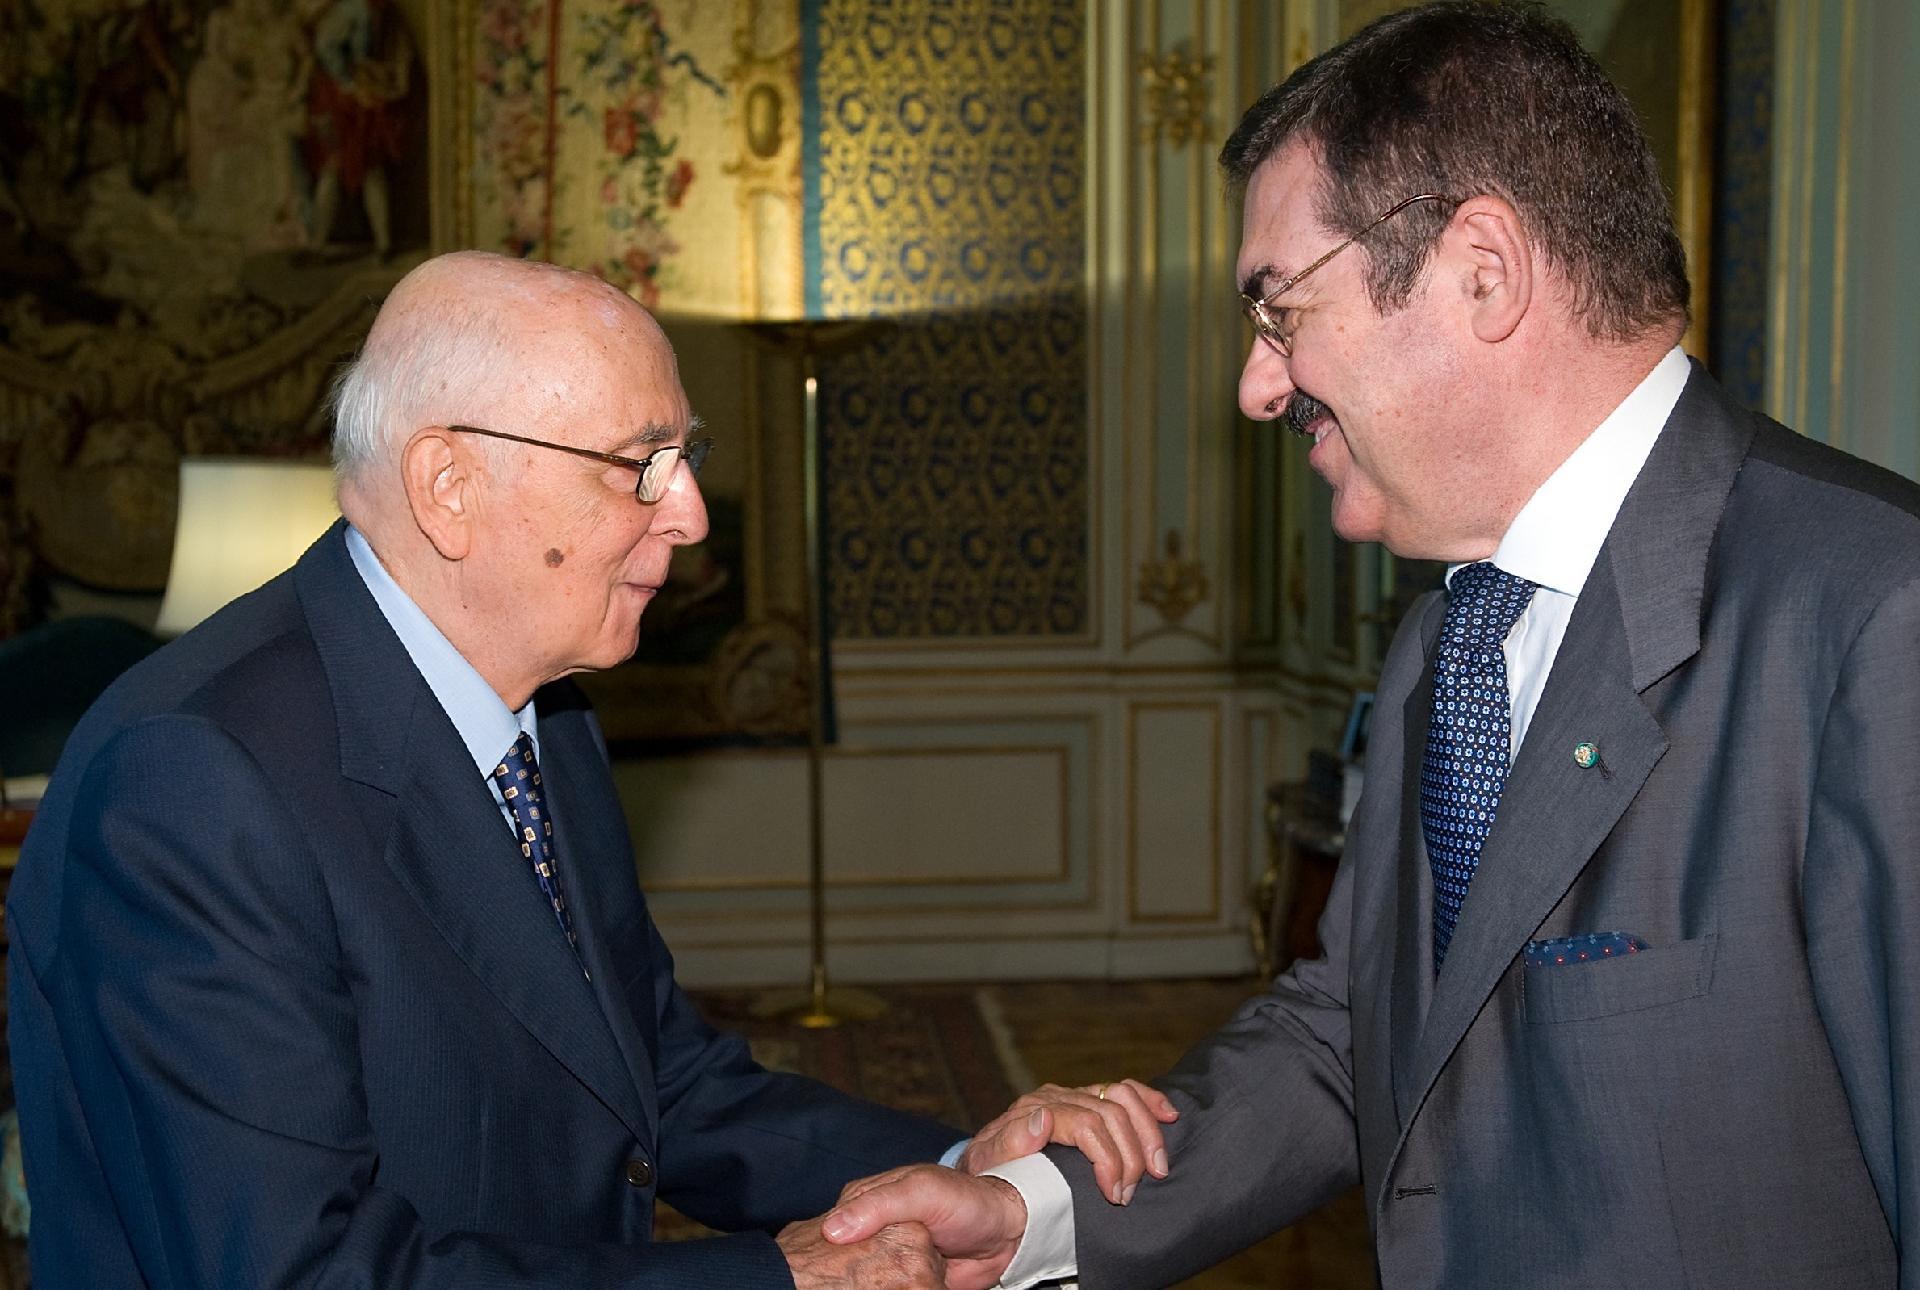 Il Presidente Giorgio Napolitano accoglie Leonardo Visconti di Modrone, nuovo Ambasciatore d'Italia a Madrid